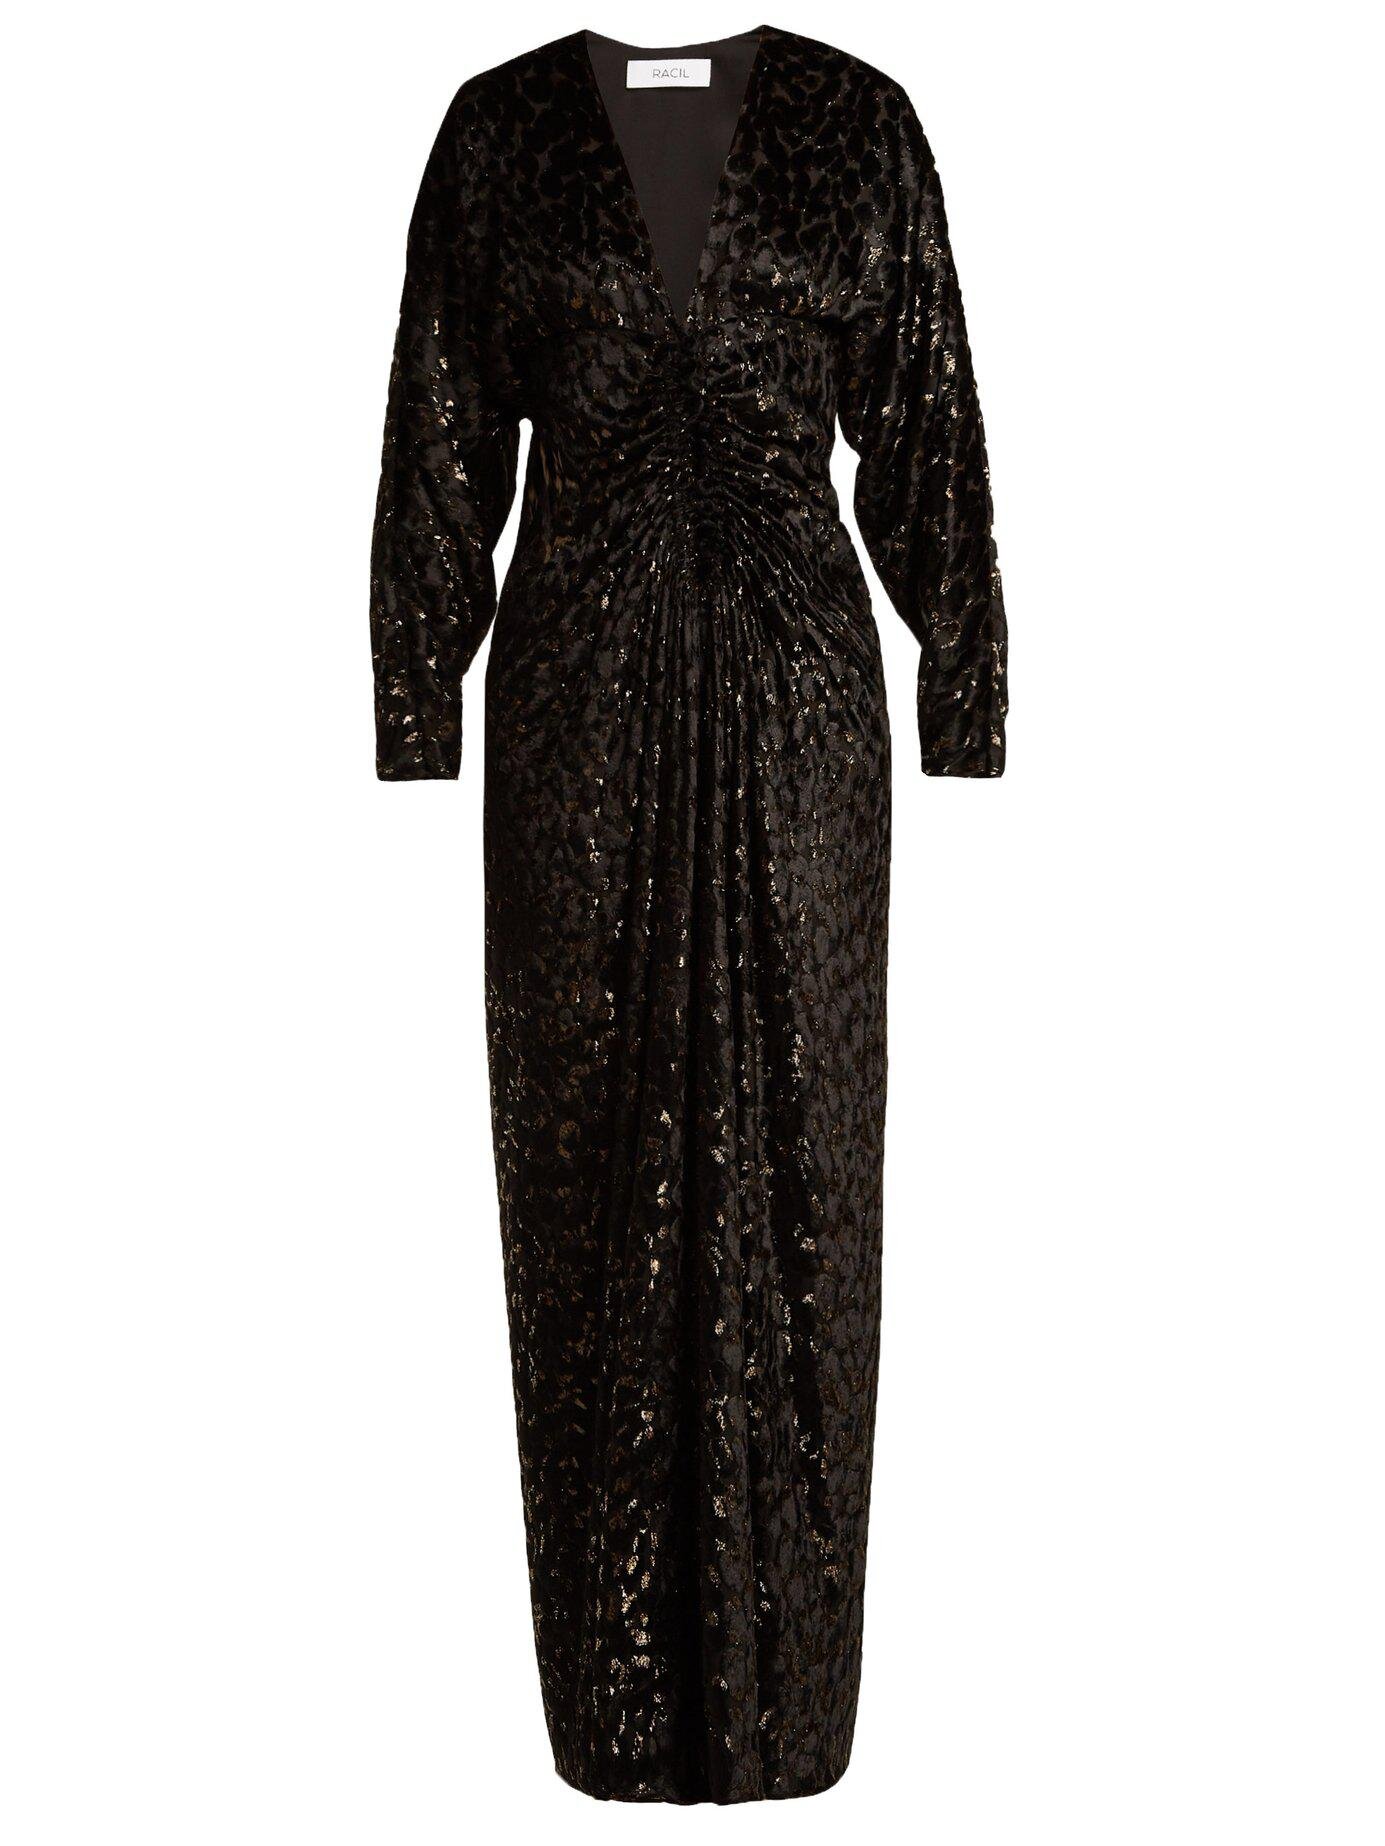 Racil Rita Dress in Black Velvet-Devoré.jpg